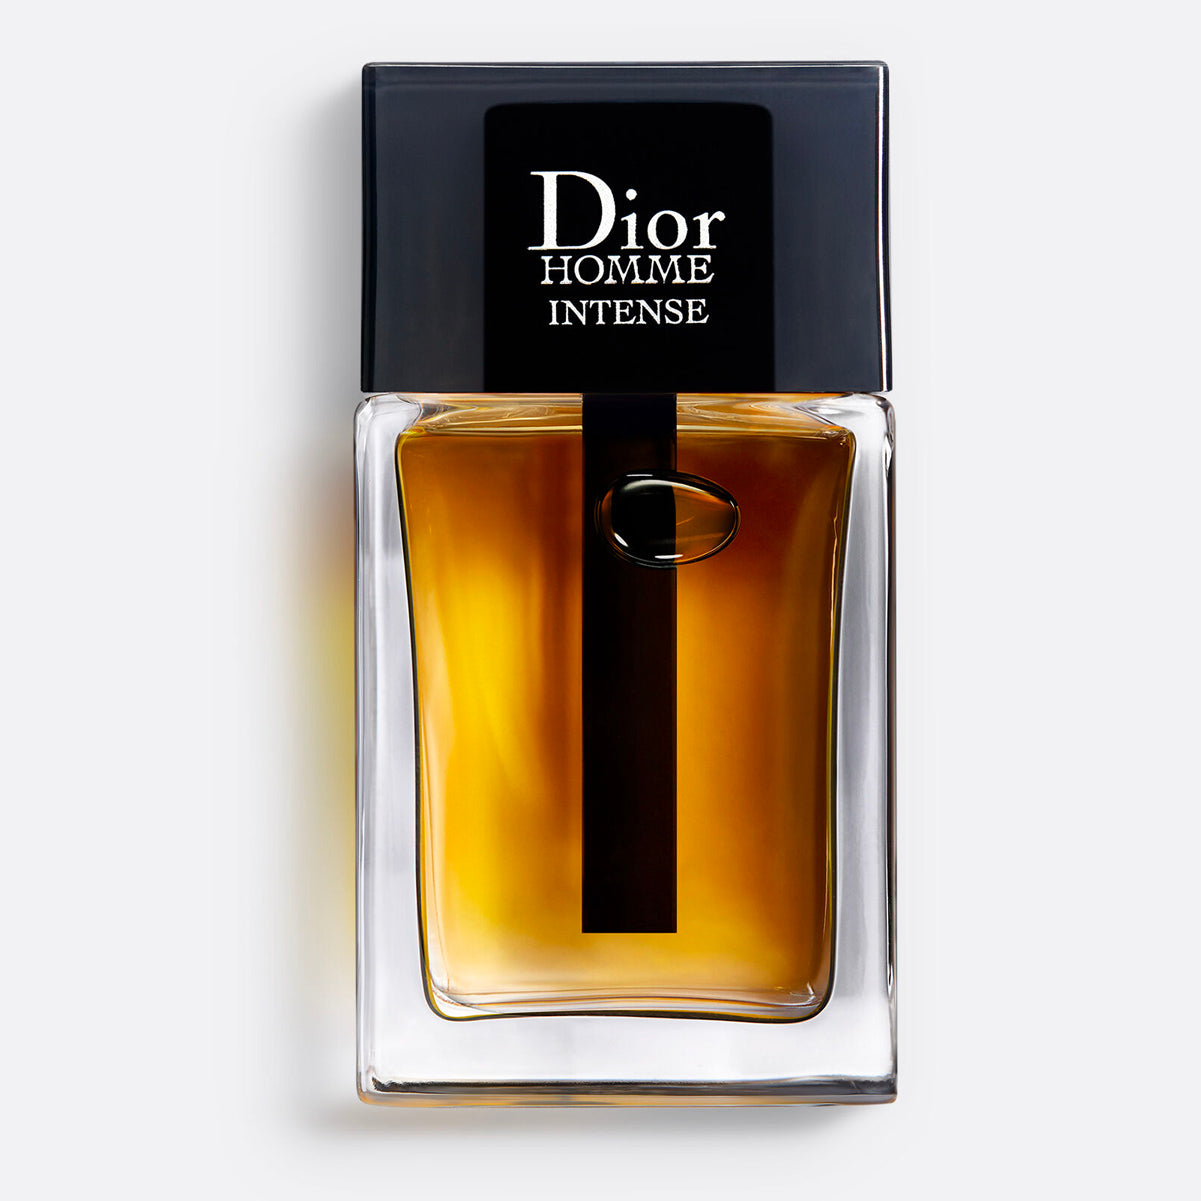 Dior Homme Intense 5.0 oz for men